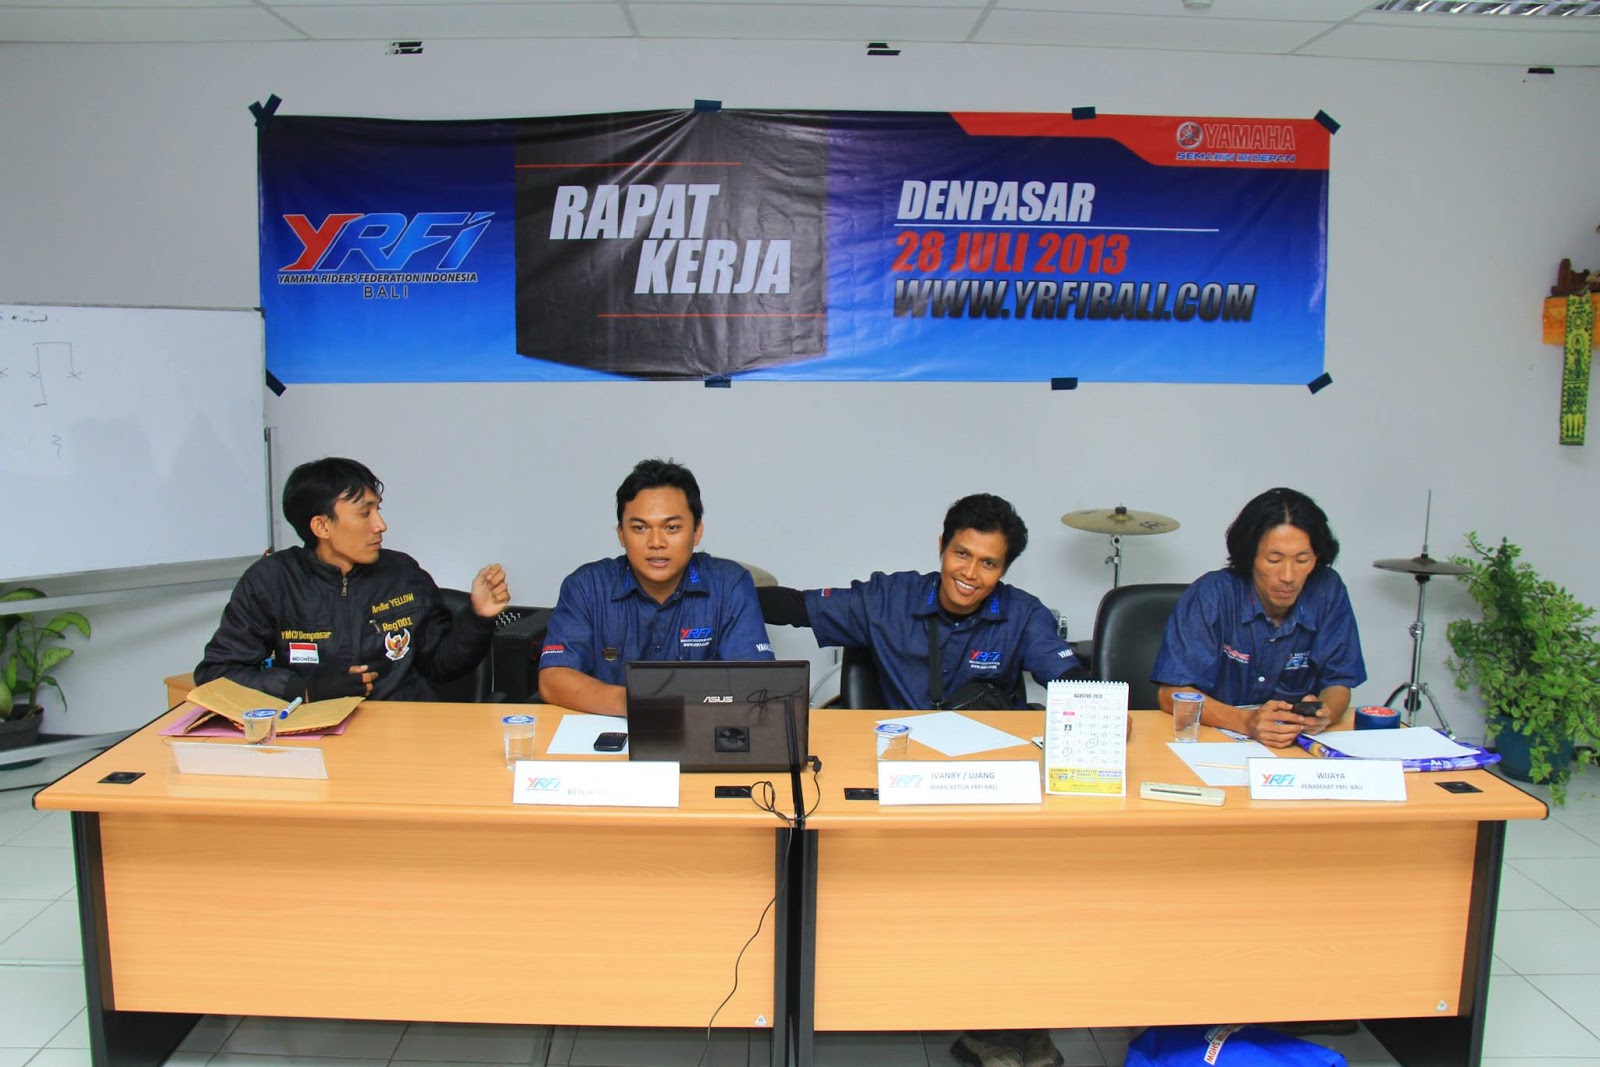 Rapat Kerja YRFI Bali 28 Juli 2013  Yamaha Vixion Club 